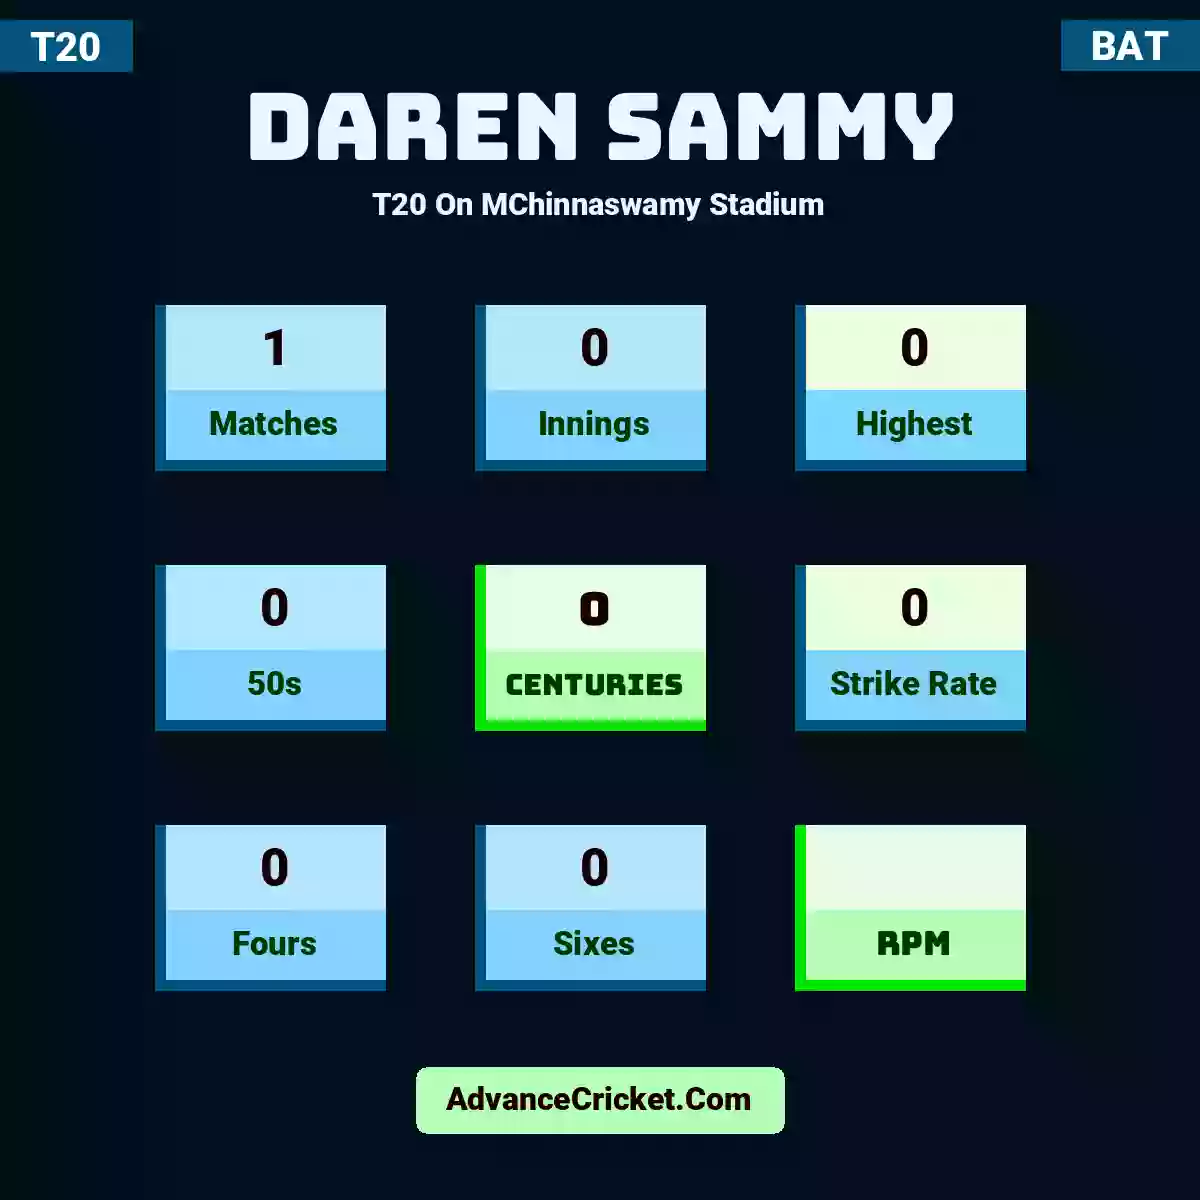 Daren Sammy T20  On MChinnaswamy Stadium, Daren Sammy played 1 matches, scored 0 runs as highest, 0 half-centuries, and 0 centuries, with a strike rate of 0. D.Sammy hit 0 fours and 0 sixes.